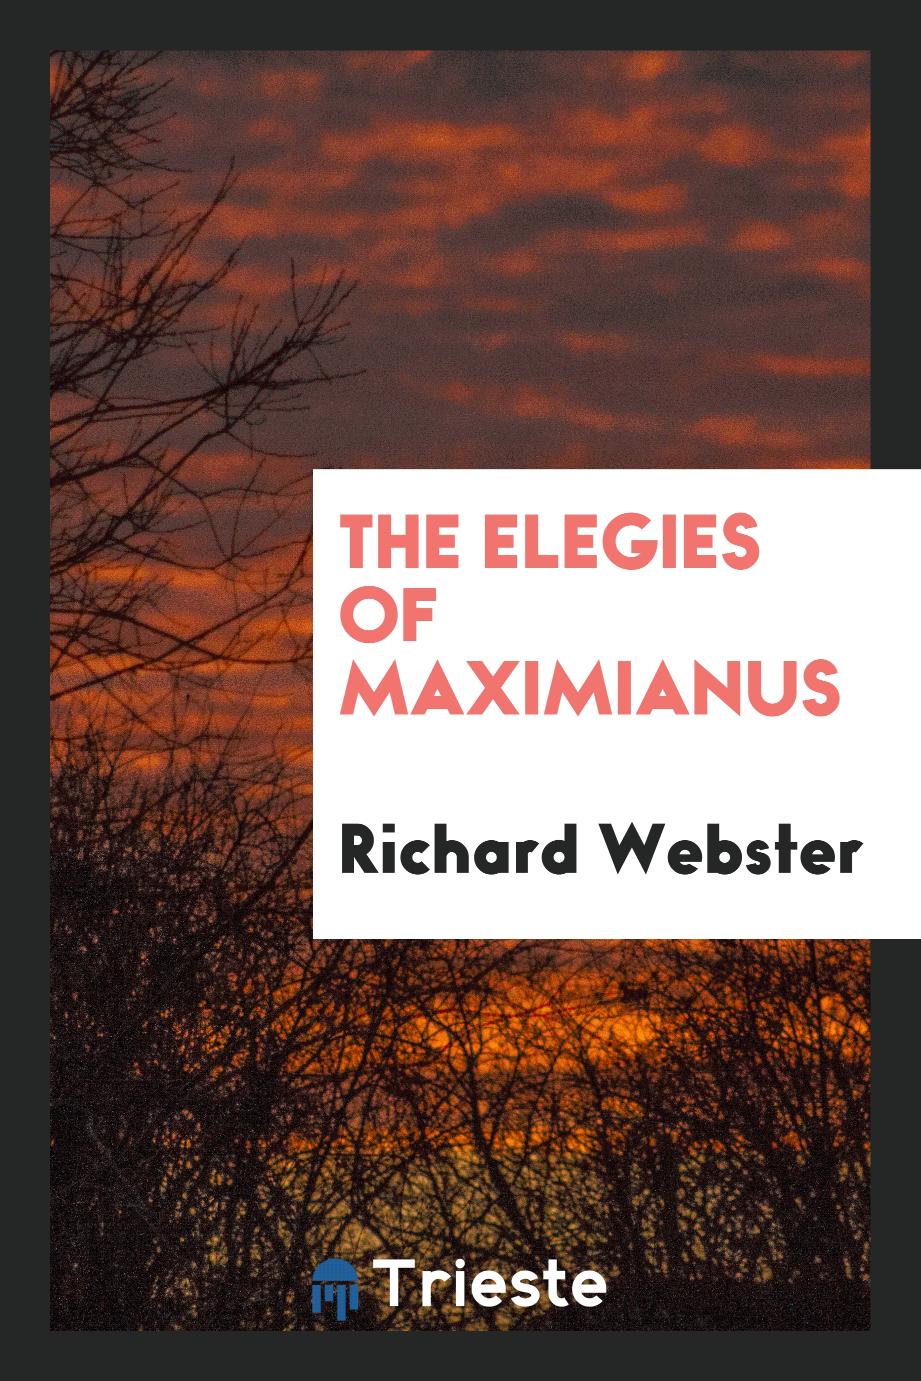 The Elegies of Maximianus